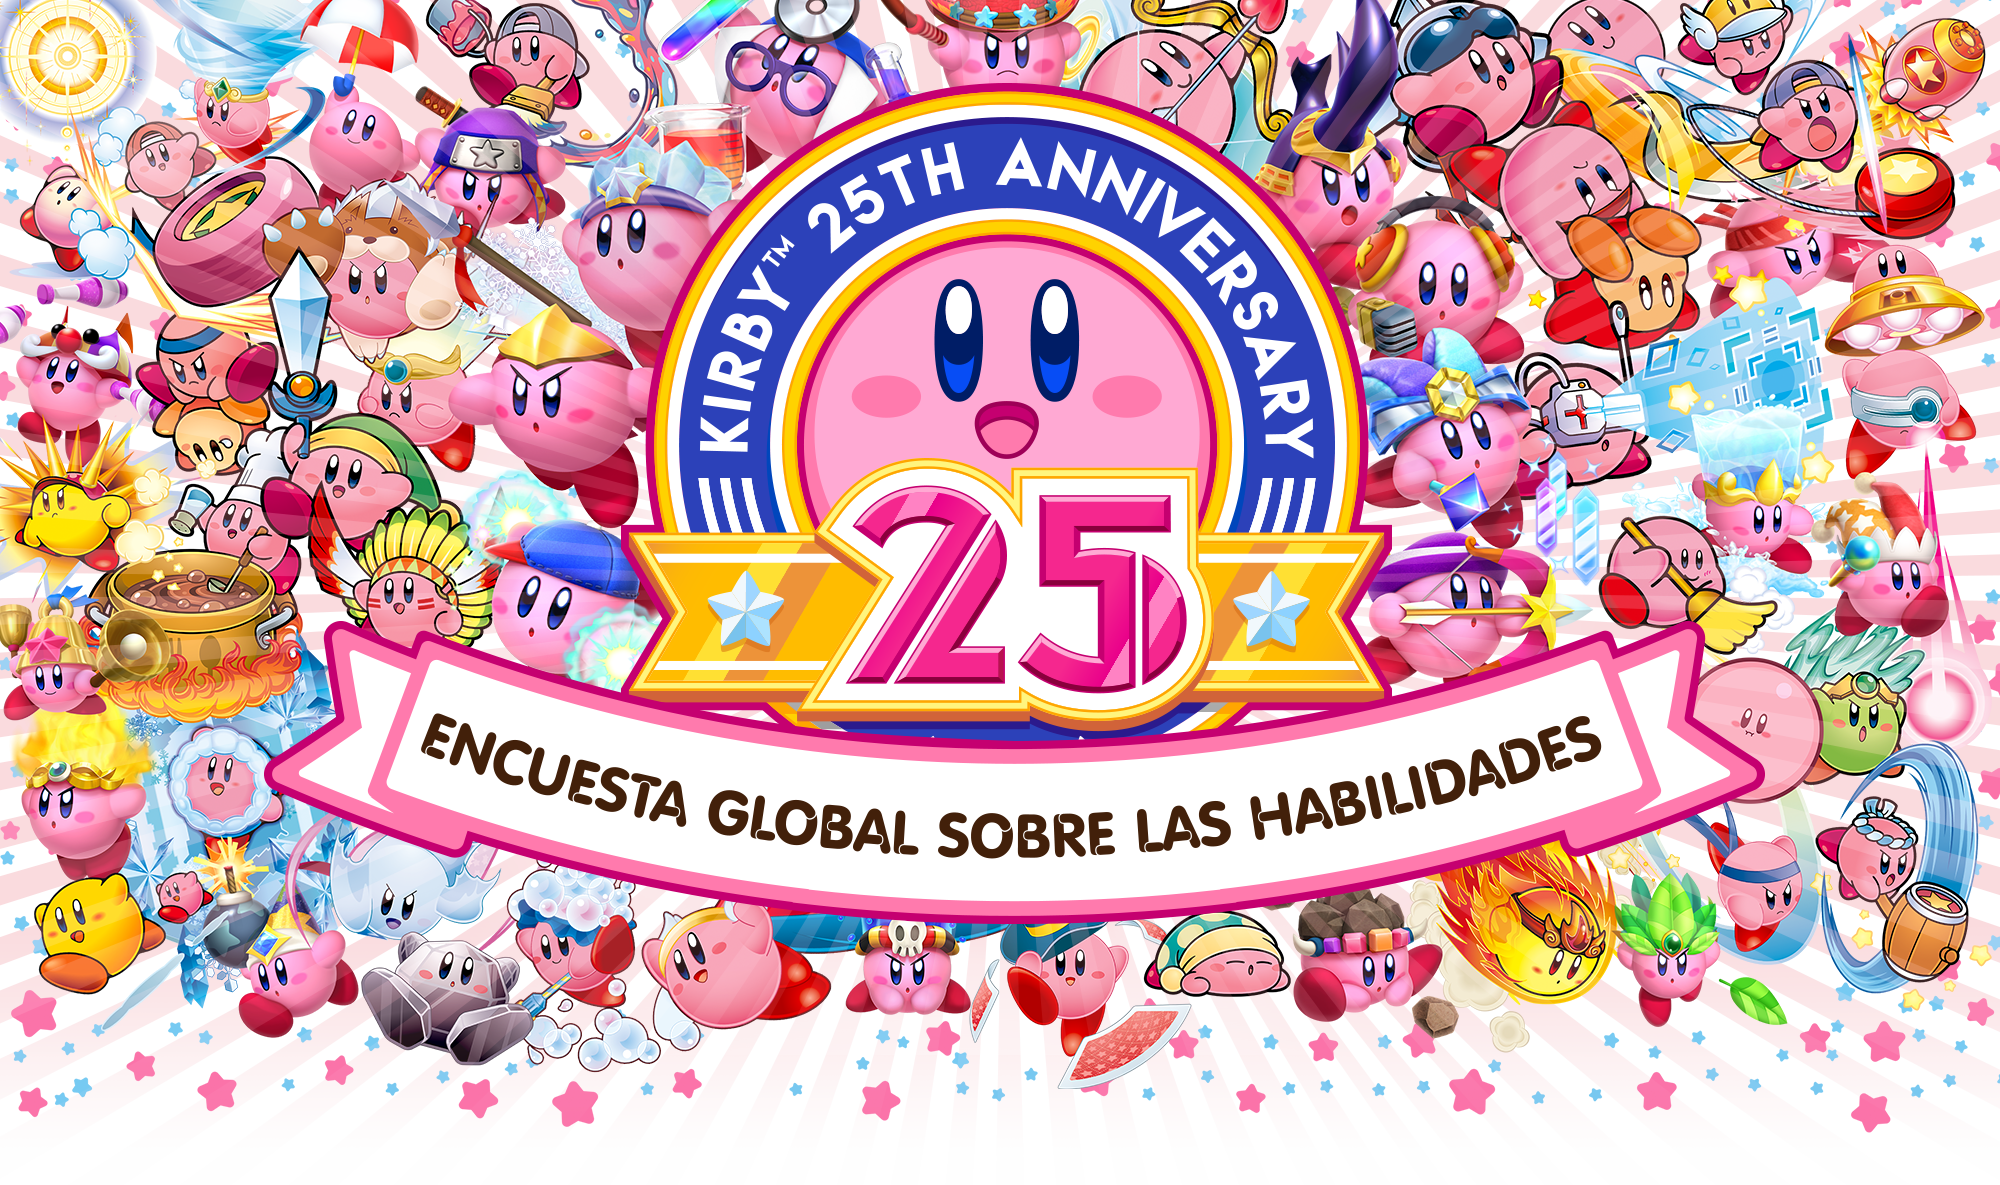 Ya puedes votar por tu habilidad de Kirby favorita en el sitio web oficial de Nintendo